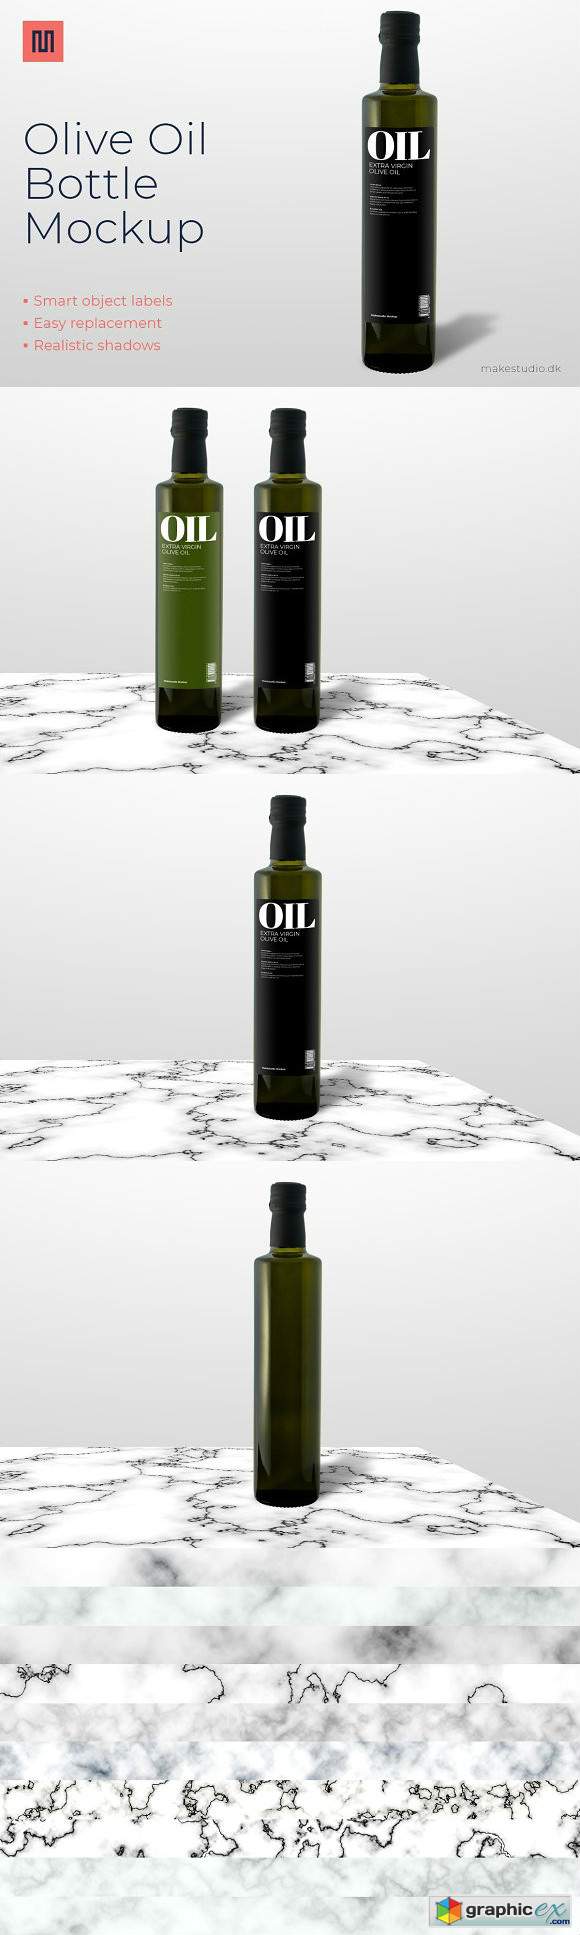 Olive oil - Bottle mockup